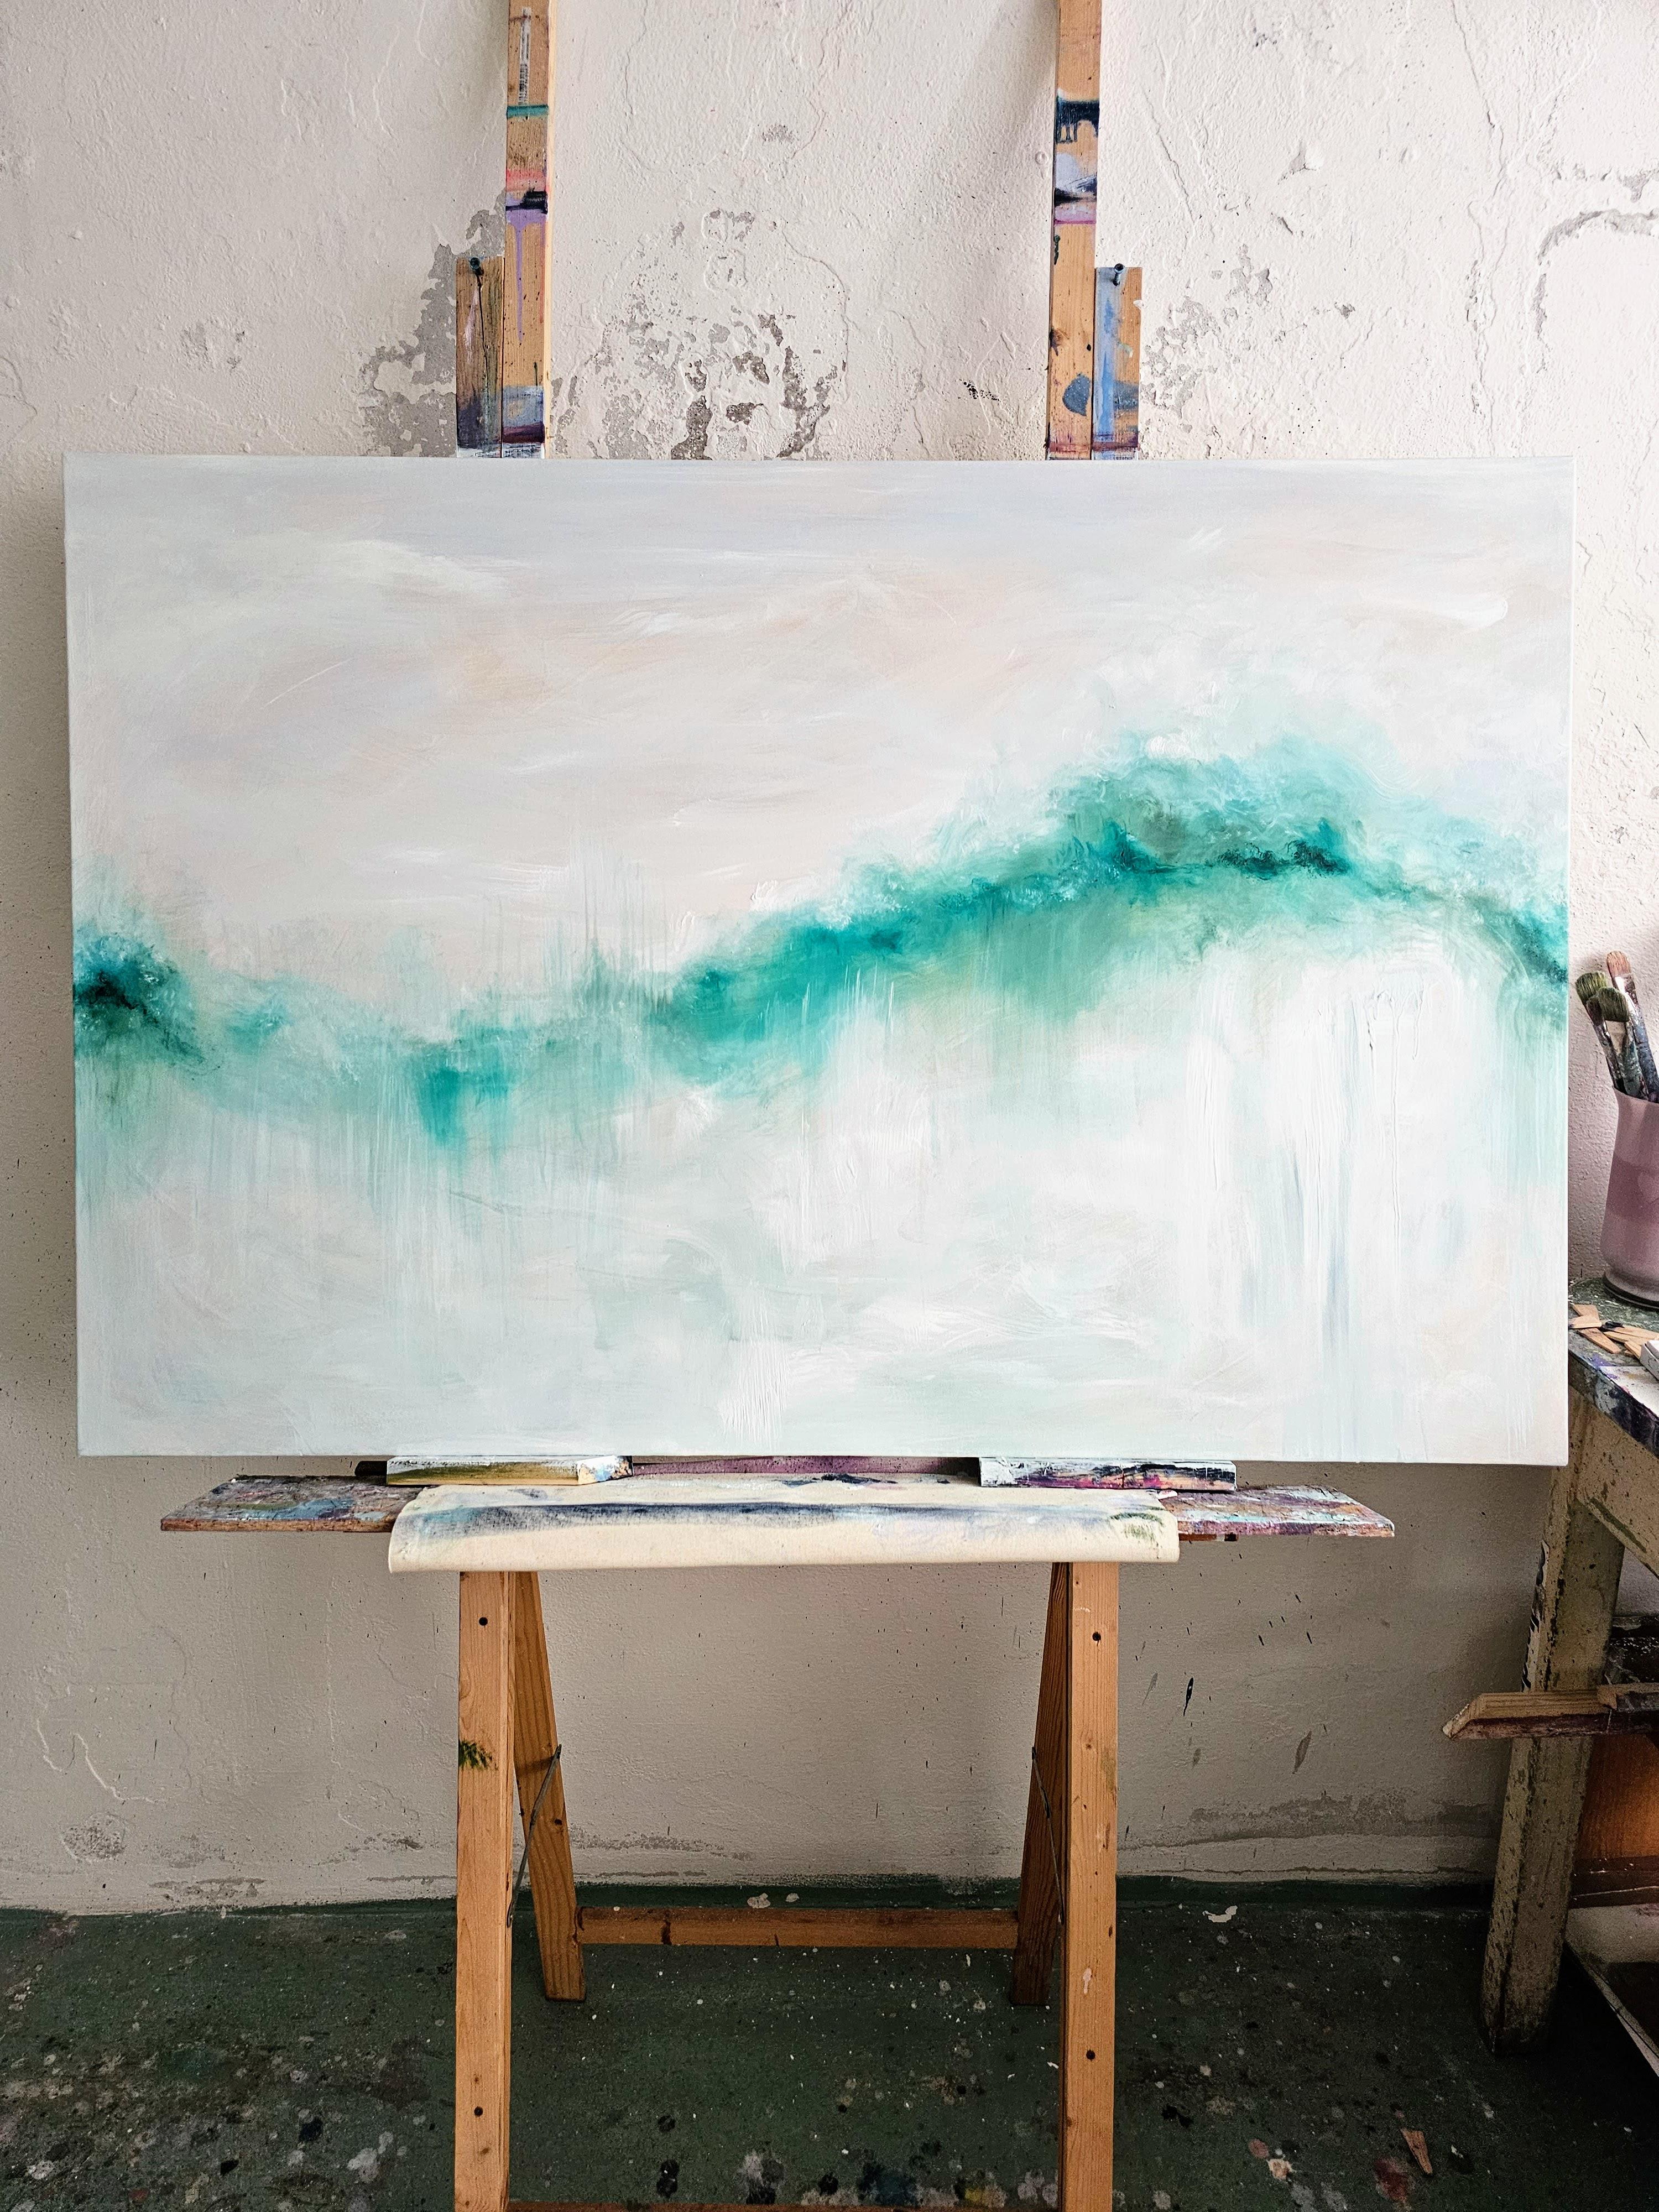 J'ai rêvé de la mer - Grande peinture abstraite de paysage marin - Painting de Jennifer L. Baker